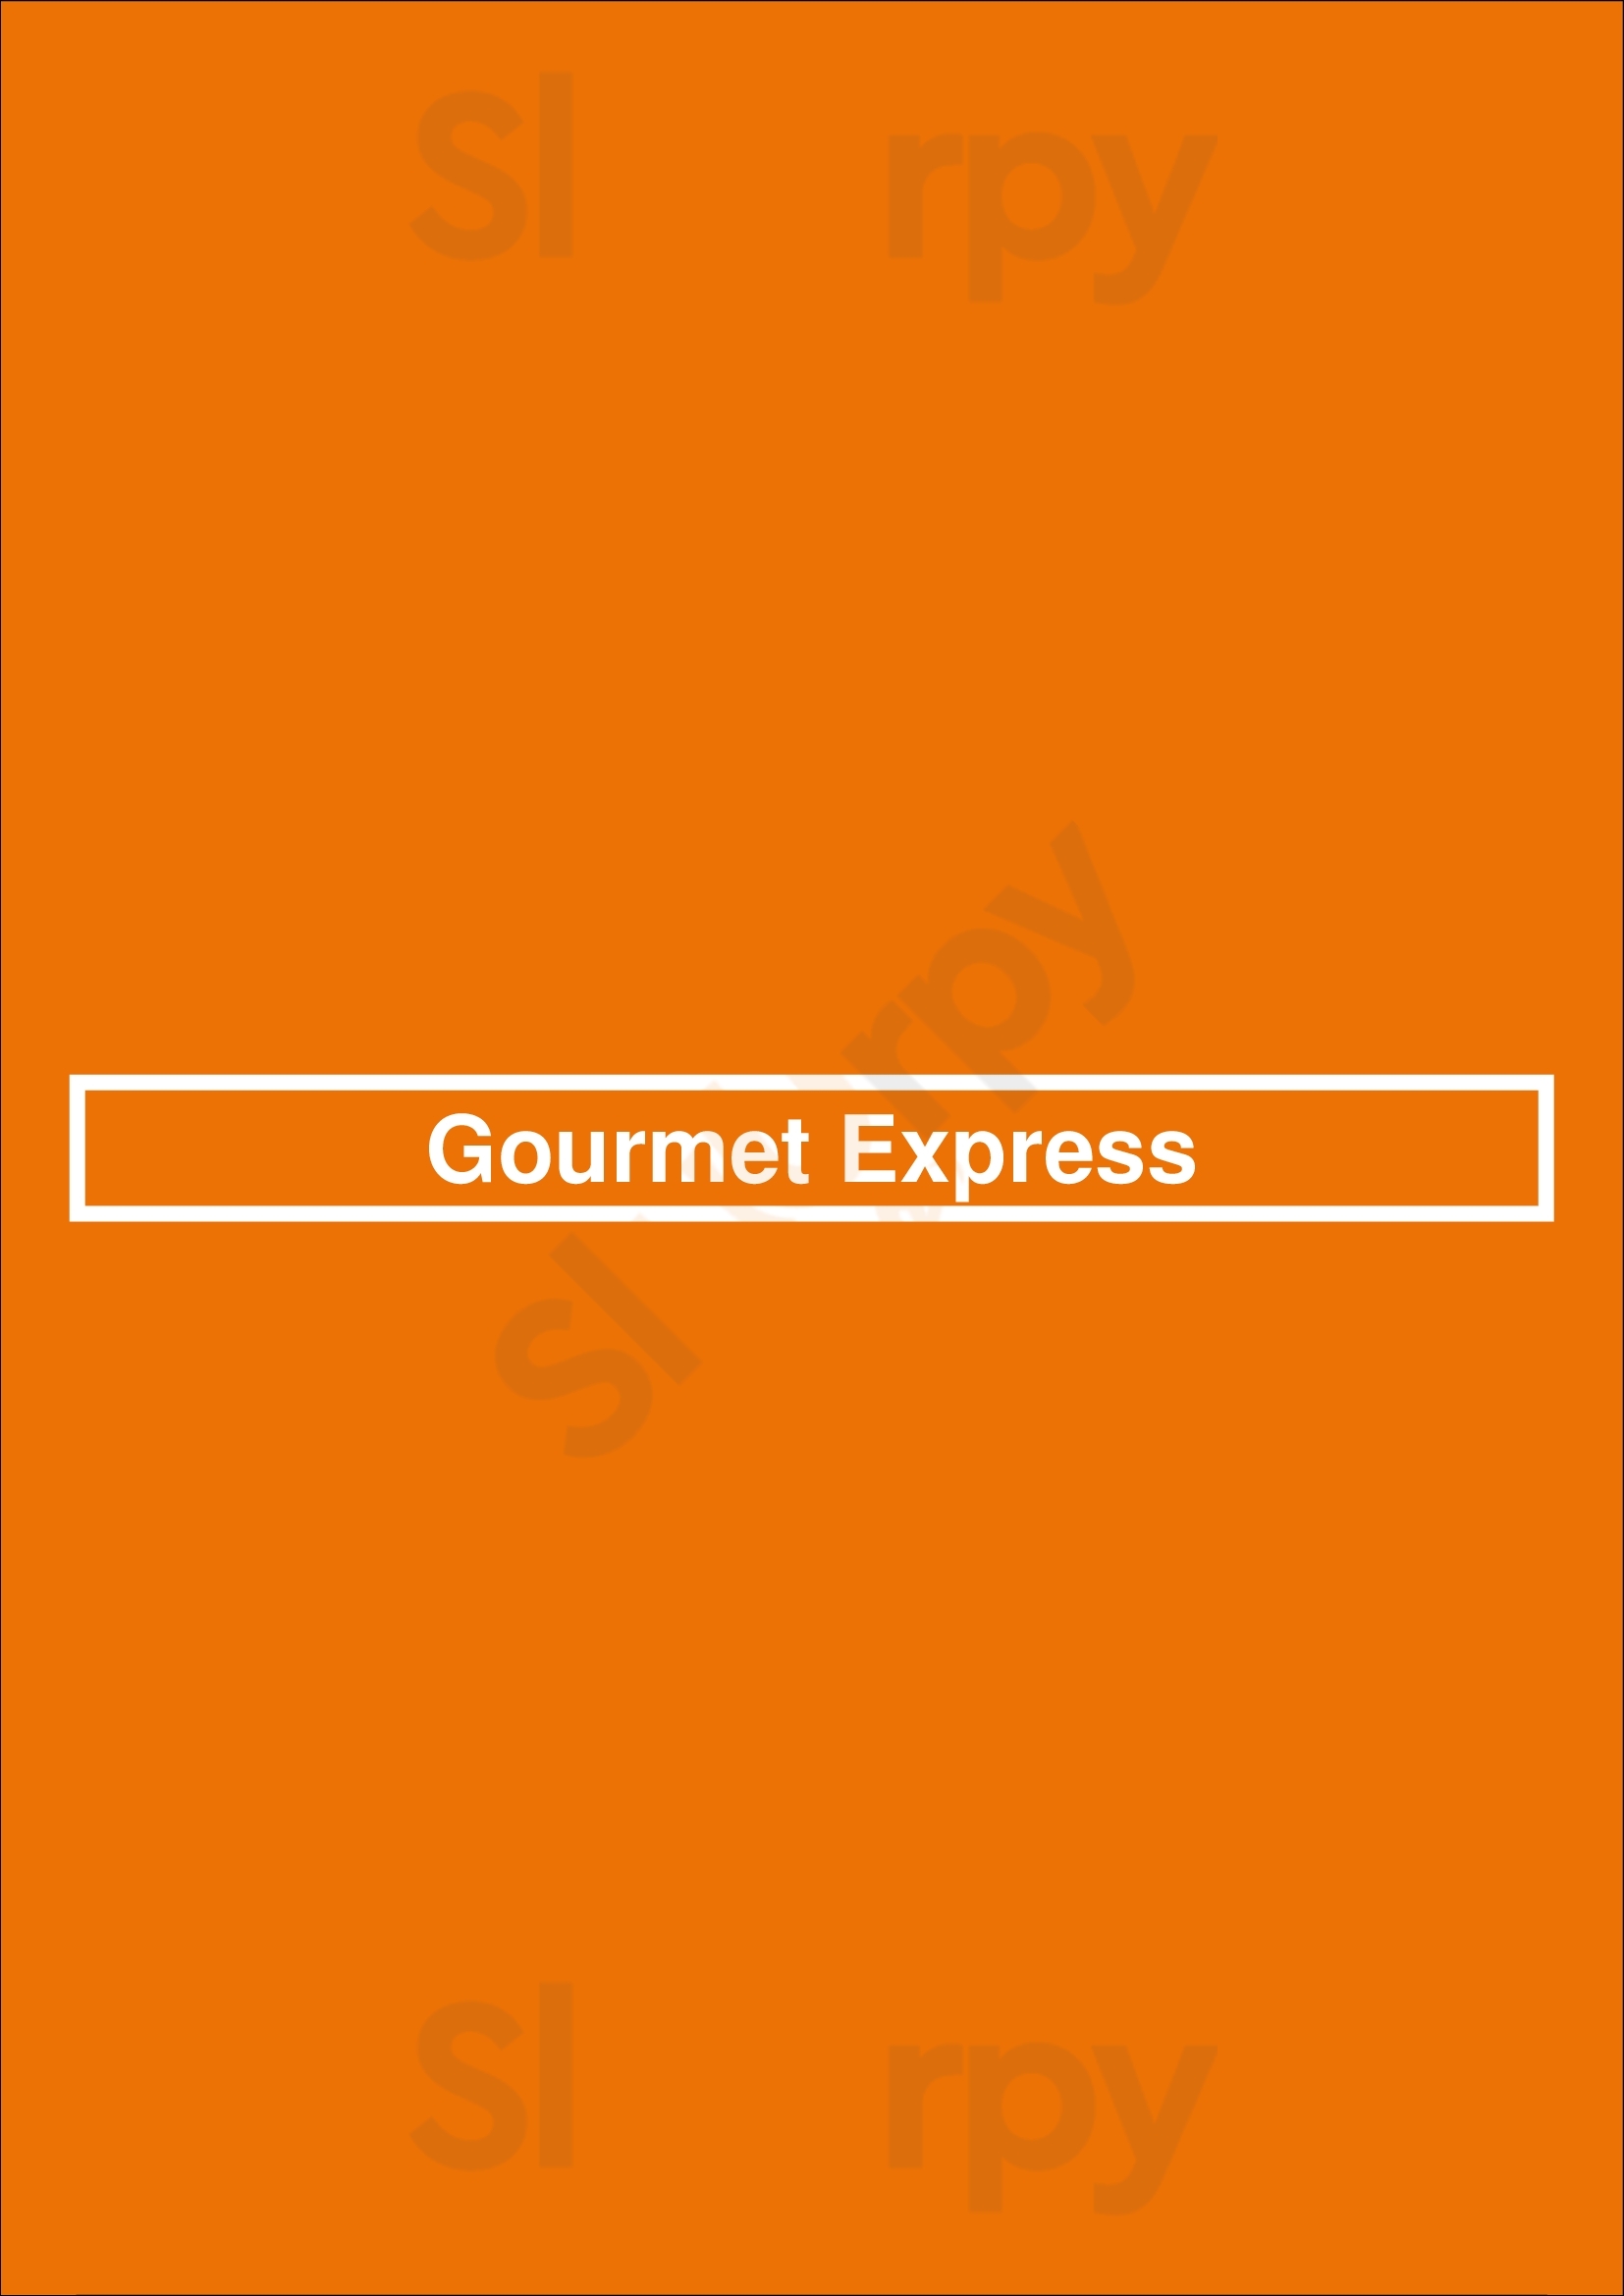 Gourmet Express Toronto Menu - 1